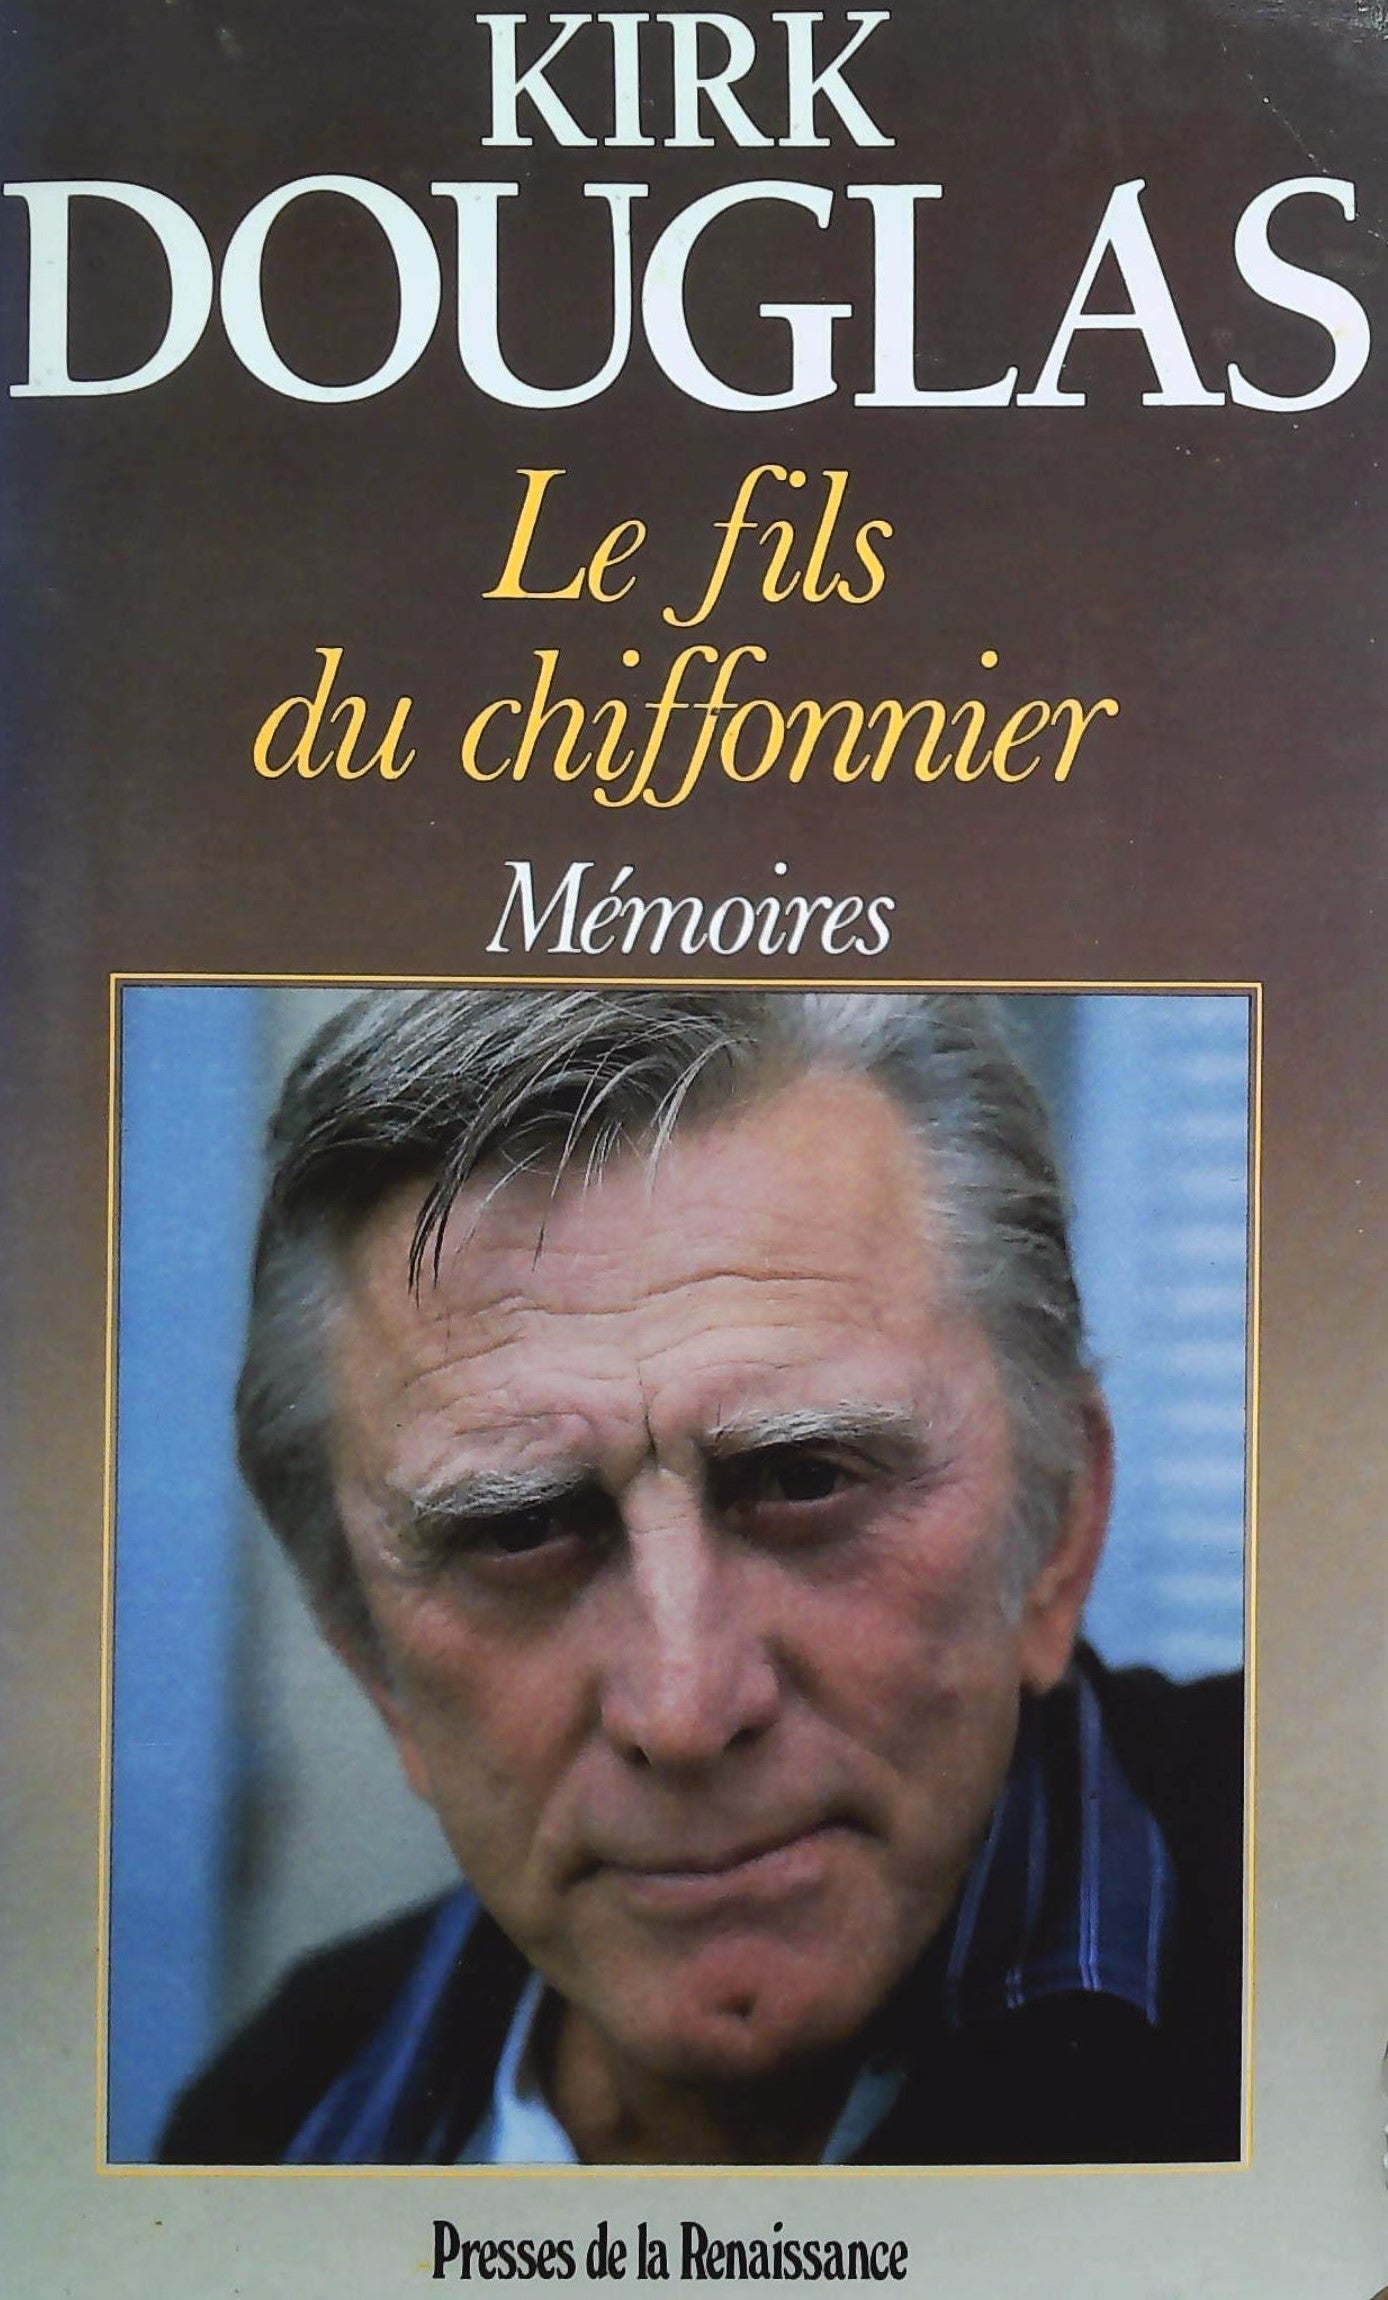 Livre ISBN 2856164897 Le fils du chiffonnier : Mémoires (Kirk Douglas)